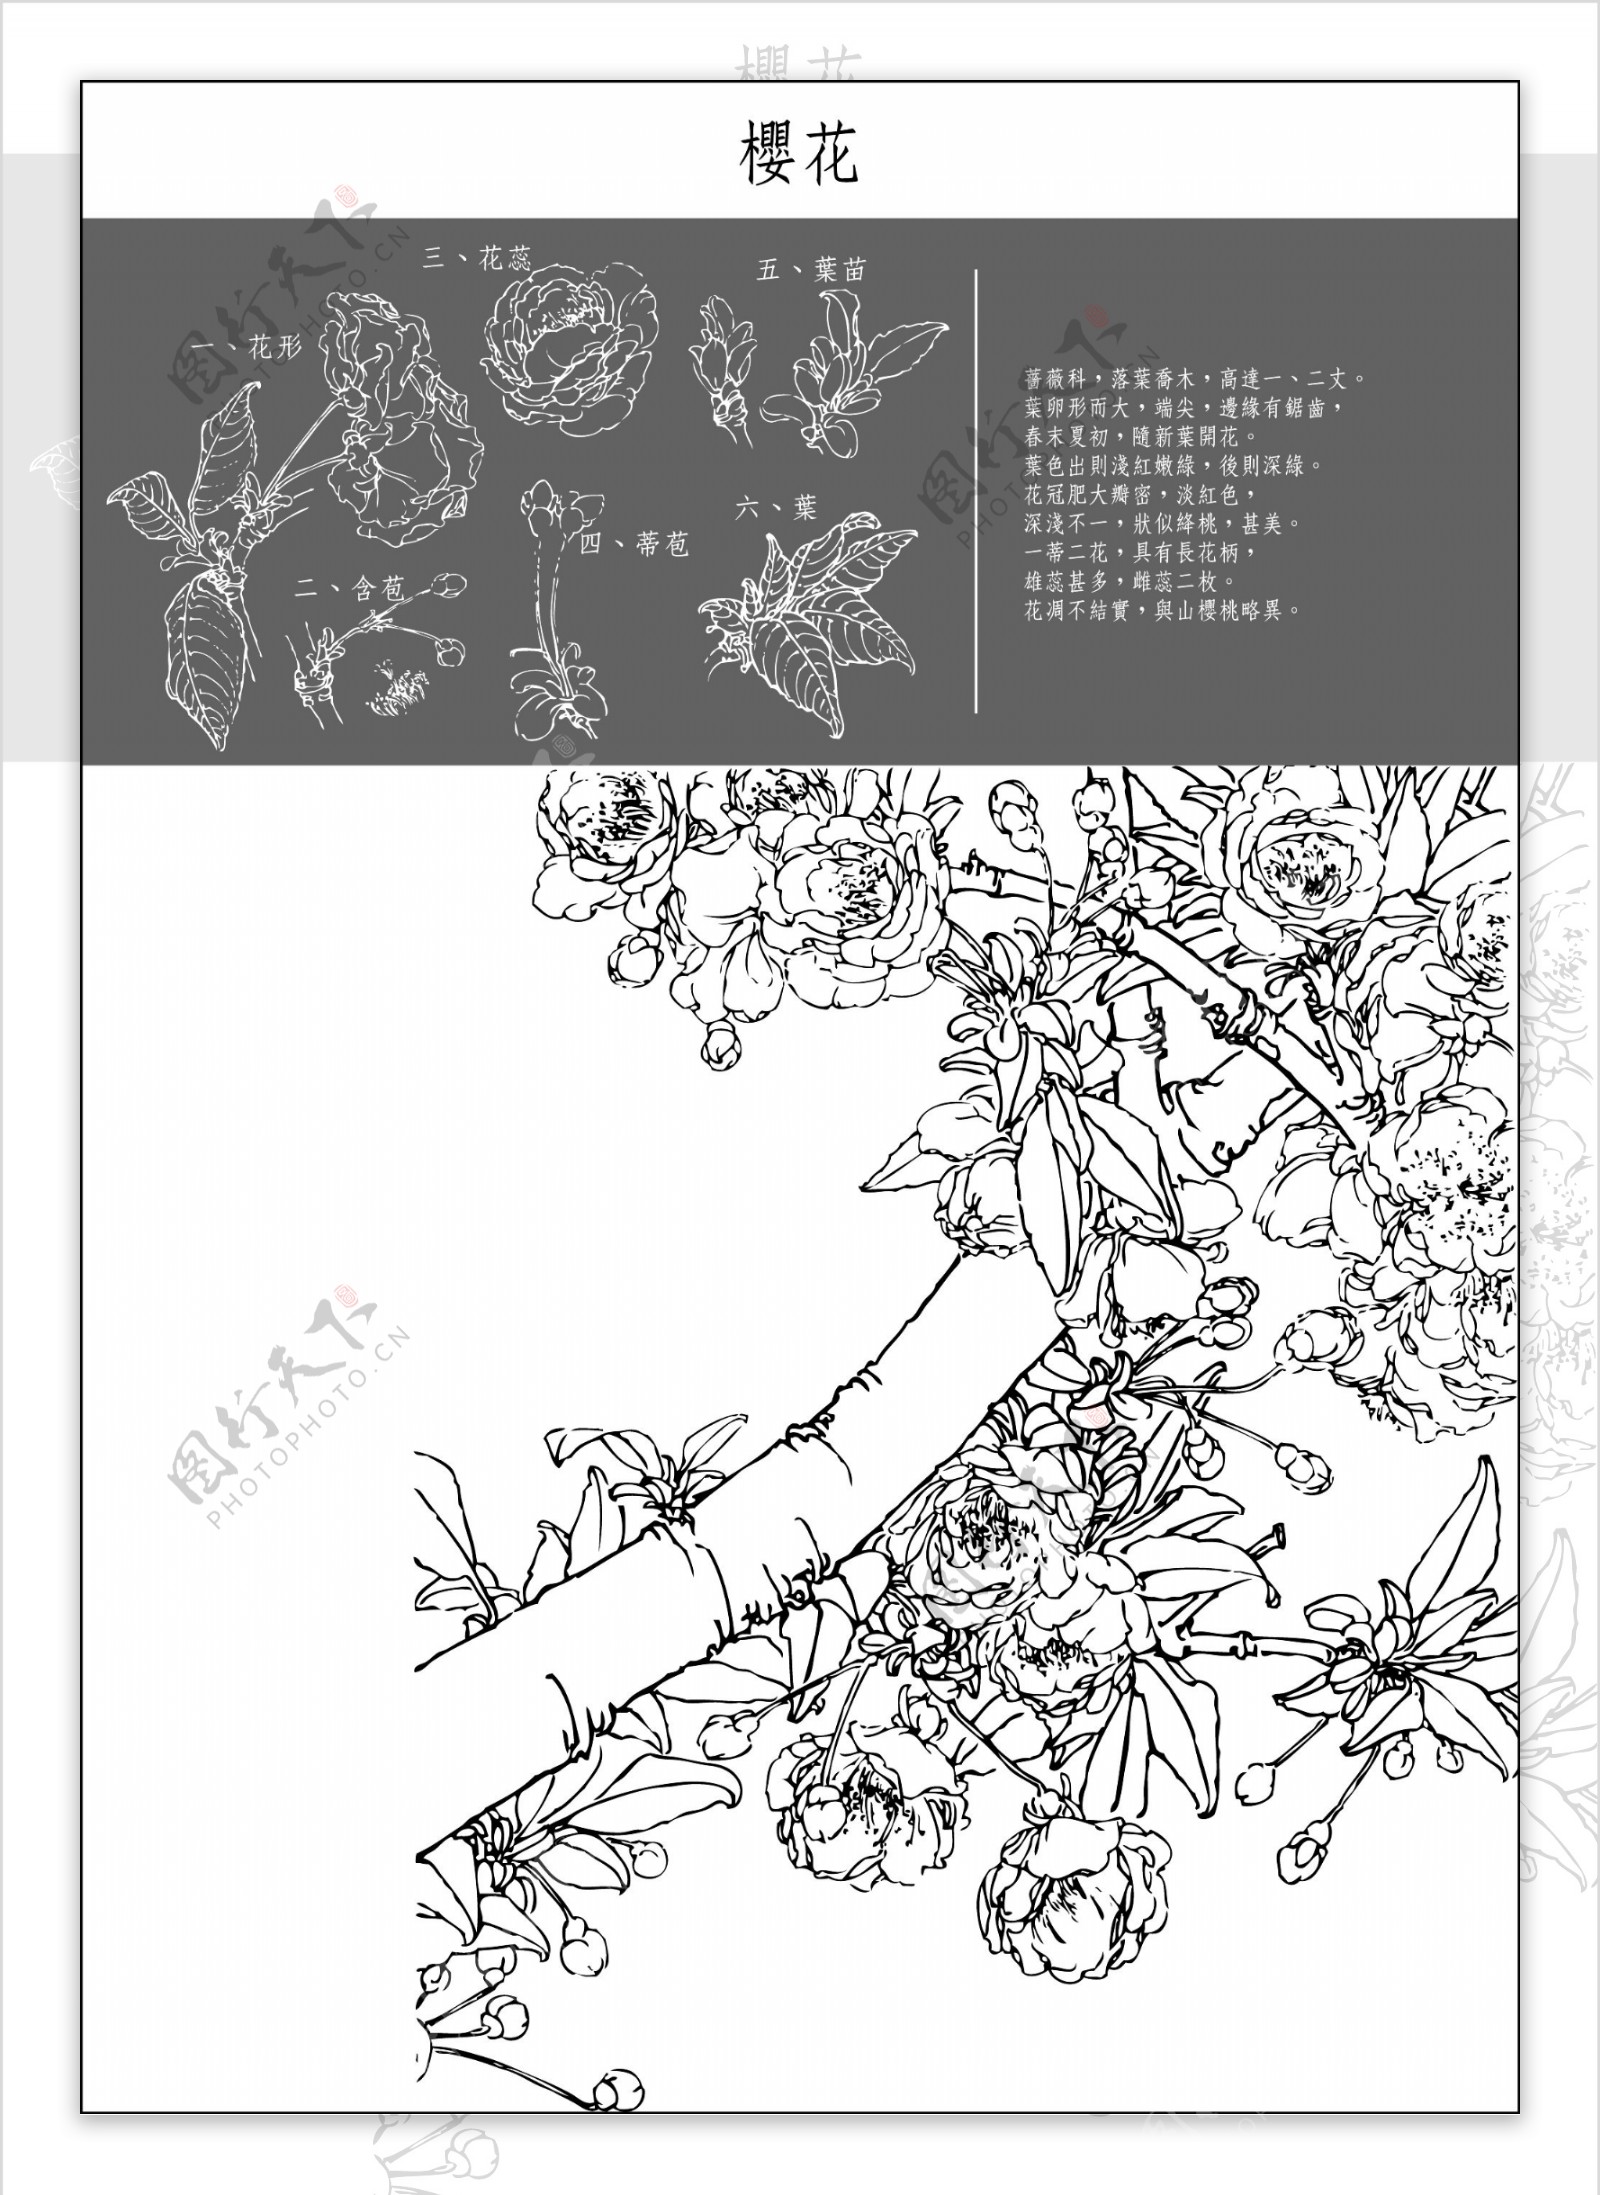 图中国传统工笔画笔法细腻注重细节4